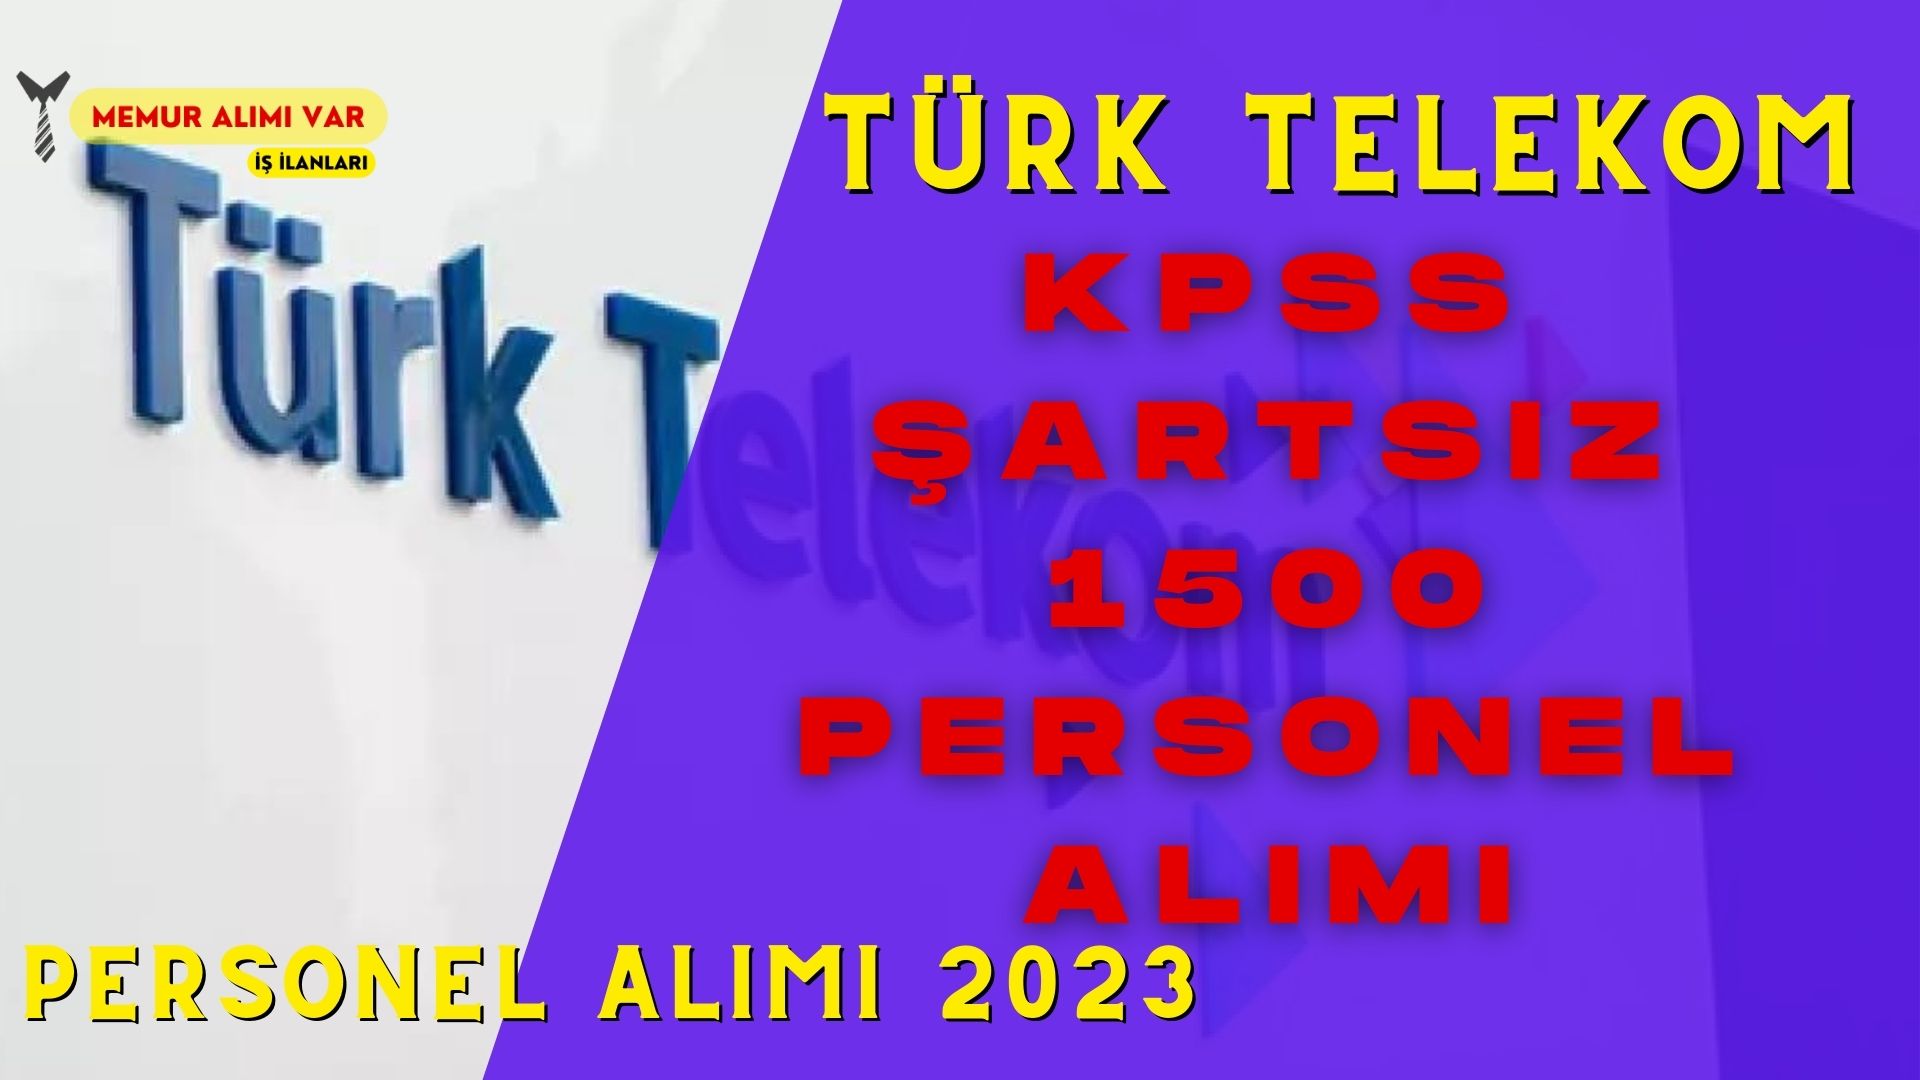 Türk Telekom 1500 Personel Alımı İlanı Yayınlandı 2023 (KPSS Şartsız)